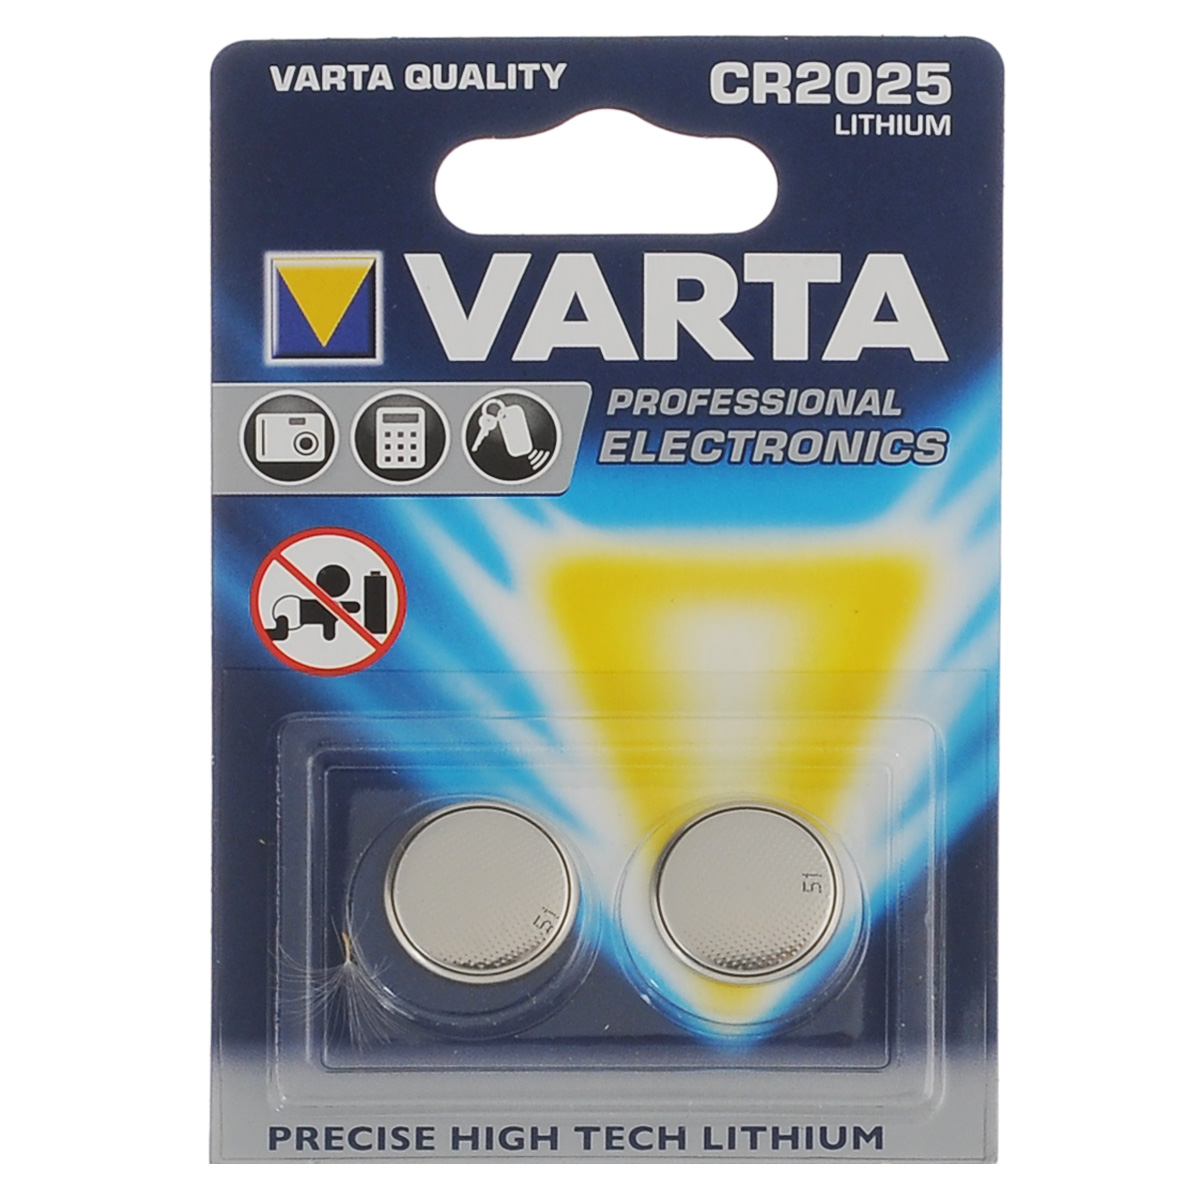 фото Батарейка литиевая Varta "Professional Electronics", тип CR2025, 3В, 2 шт